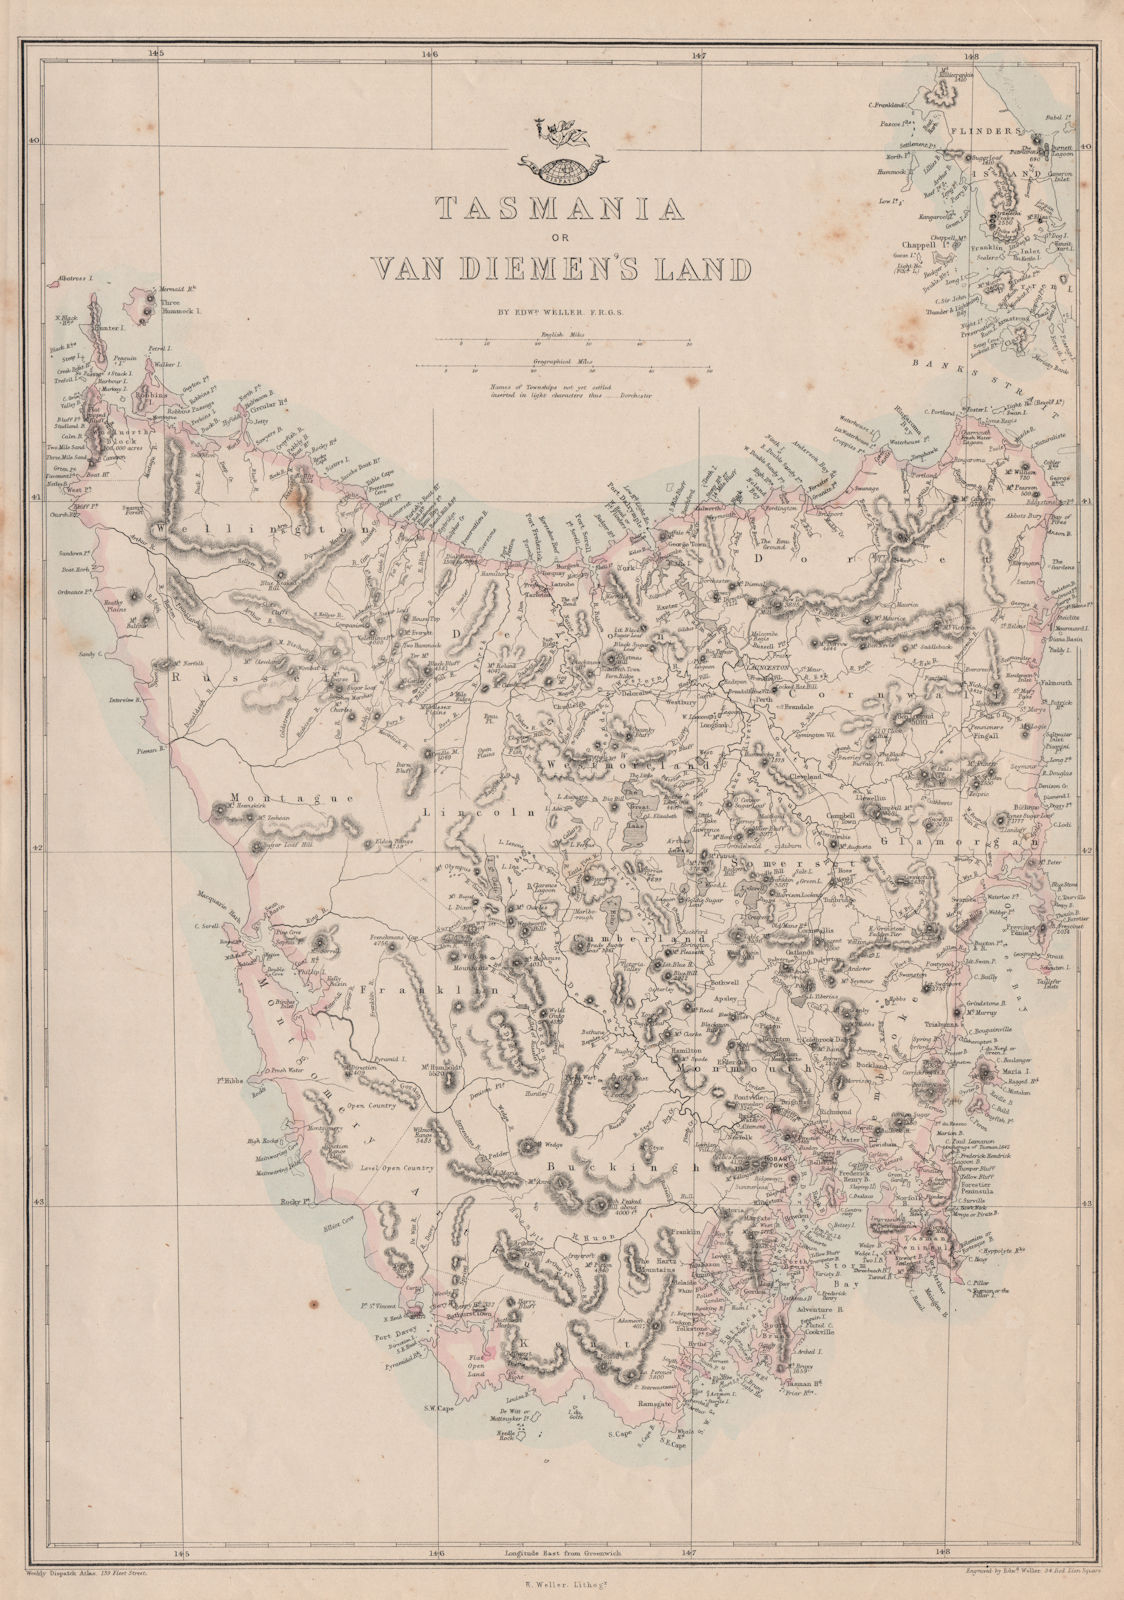 TASMANIA OR VAN DIEMEN'S LAND. Shows townships not yet settled. WELLER 1862 map